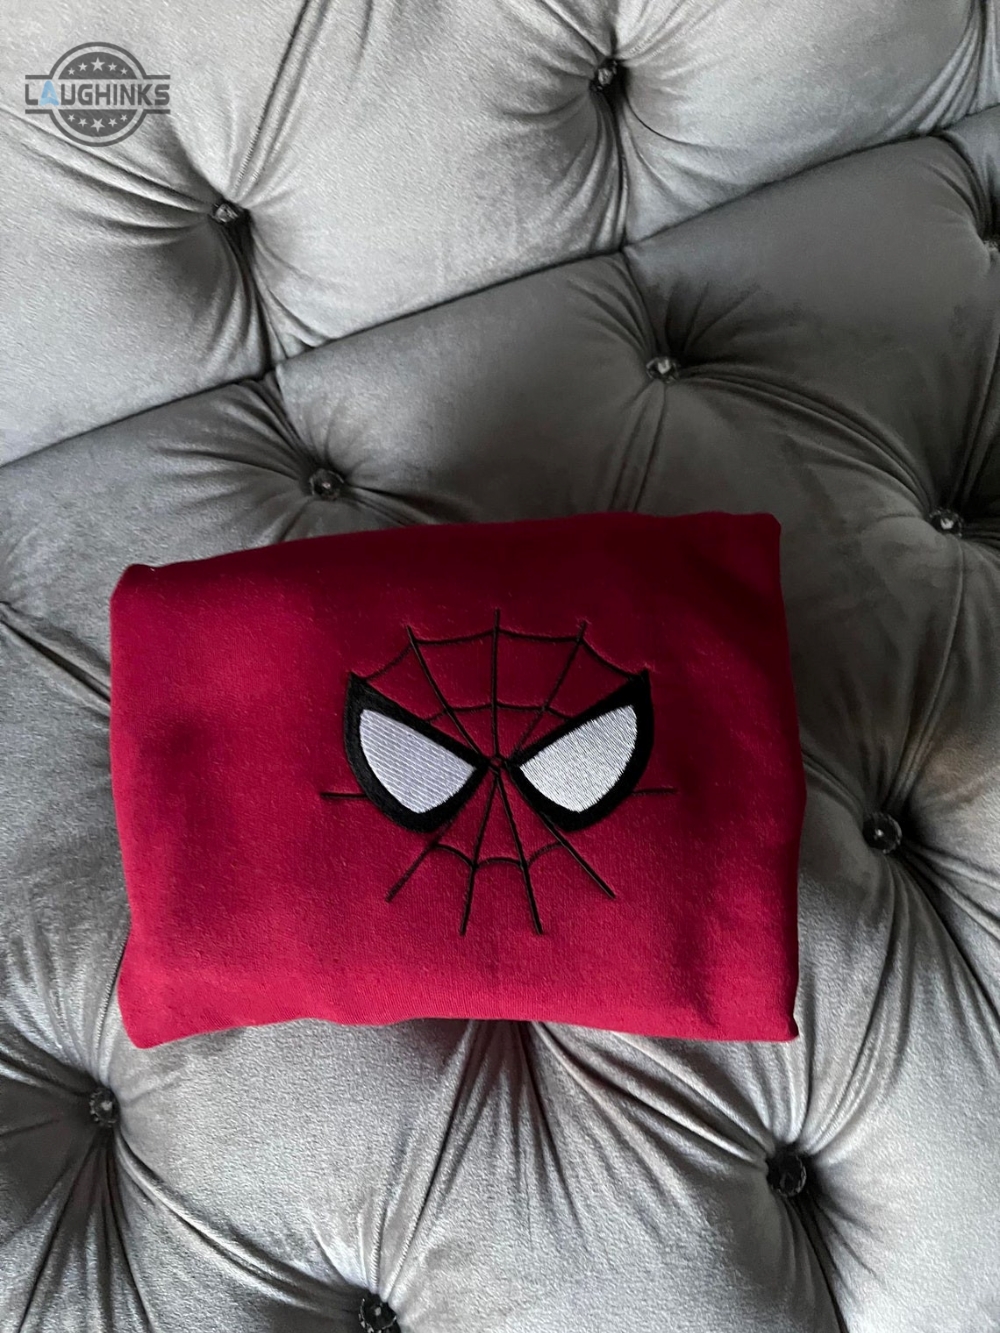 Embroidered Spiderman Sweatshirt Embroidery Tshirt Sweatshirt Hoodie Gift